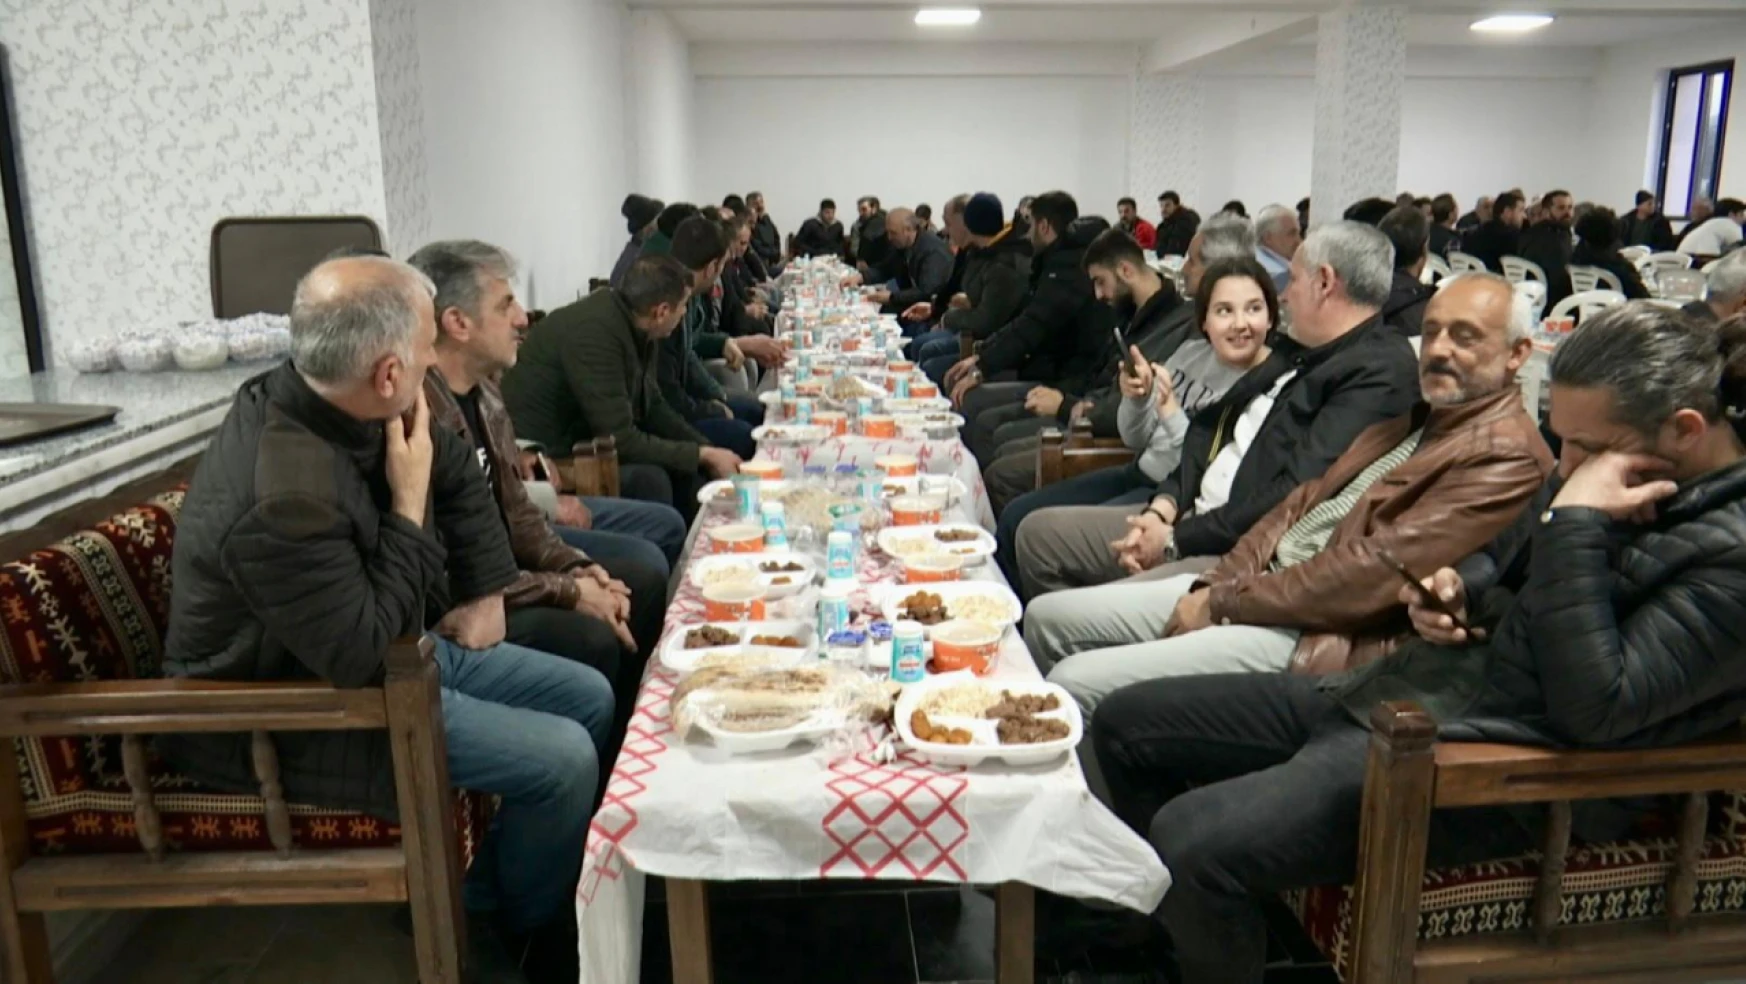 İş İnsanı Veysel Demirci tarafından iftar programı düzenlendi